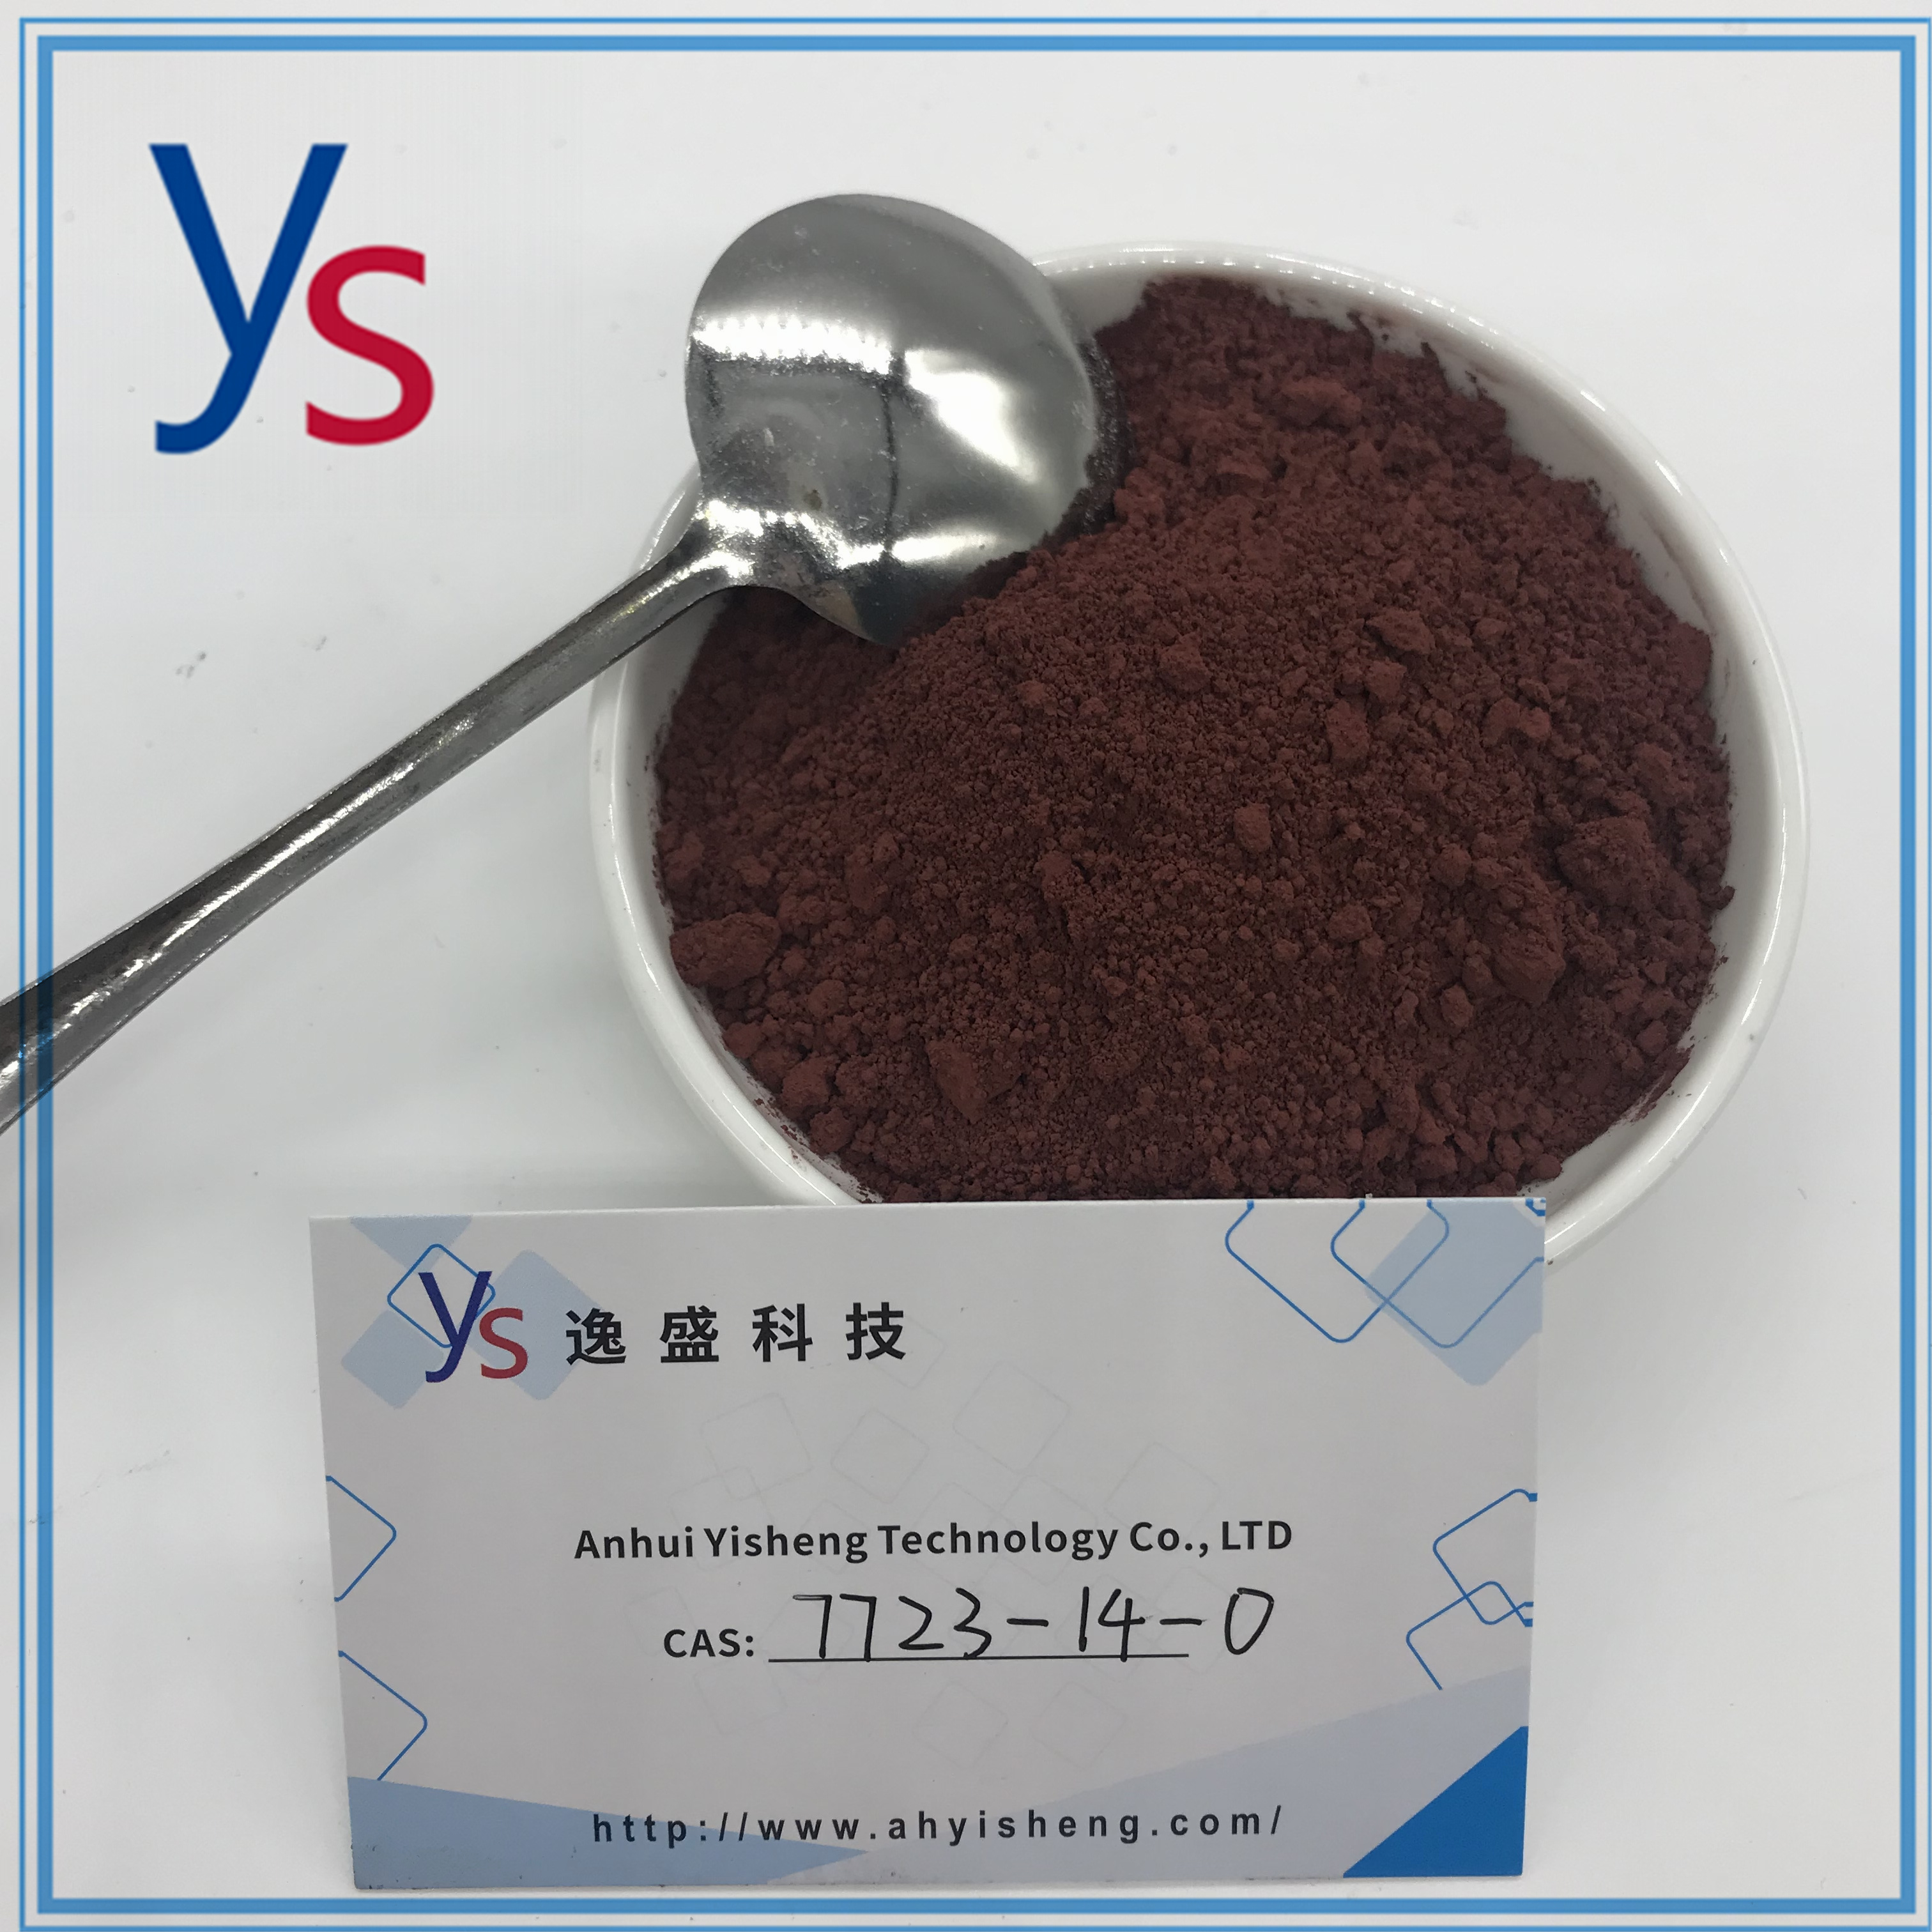 CAS 7723-14-0 Roodbruin poeder Rode fosfor van hoge kwaliteit